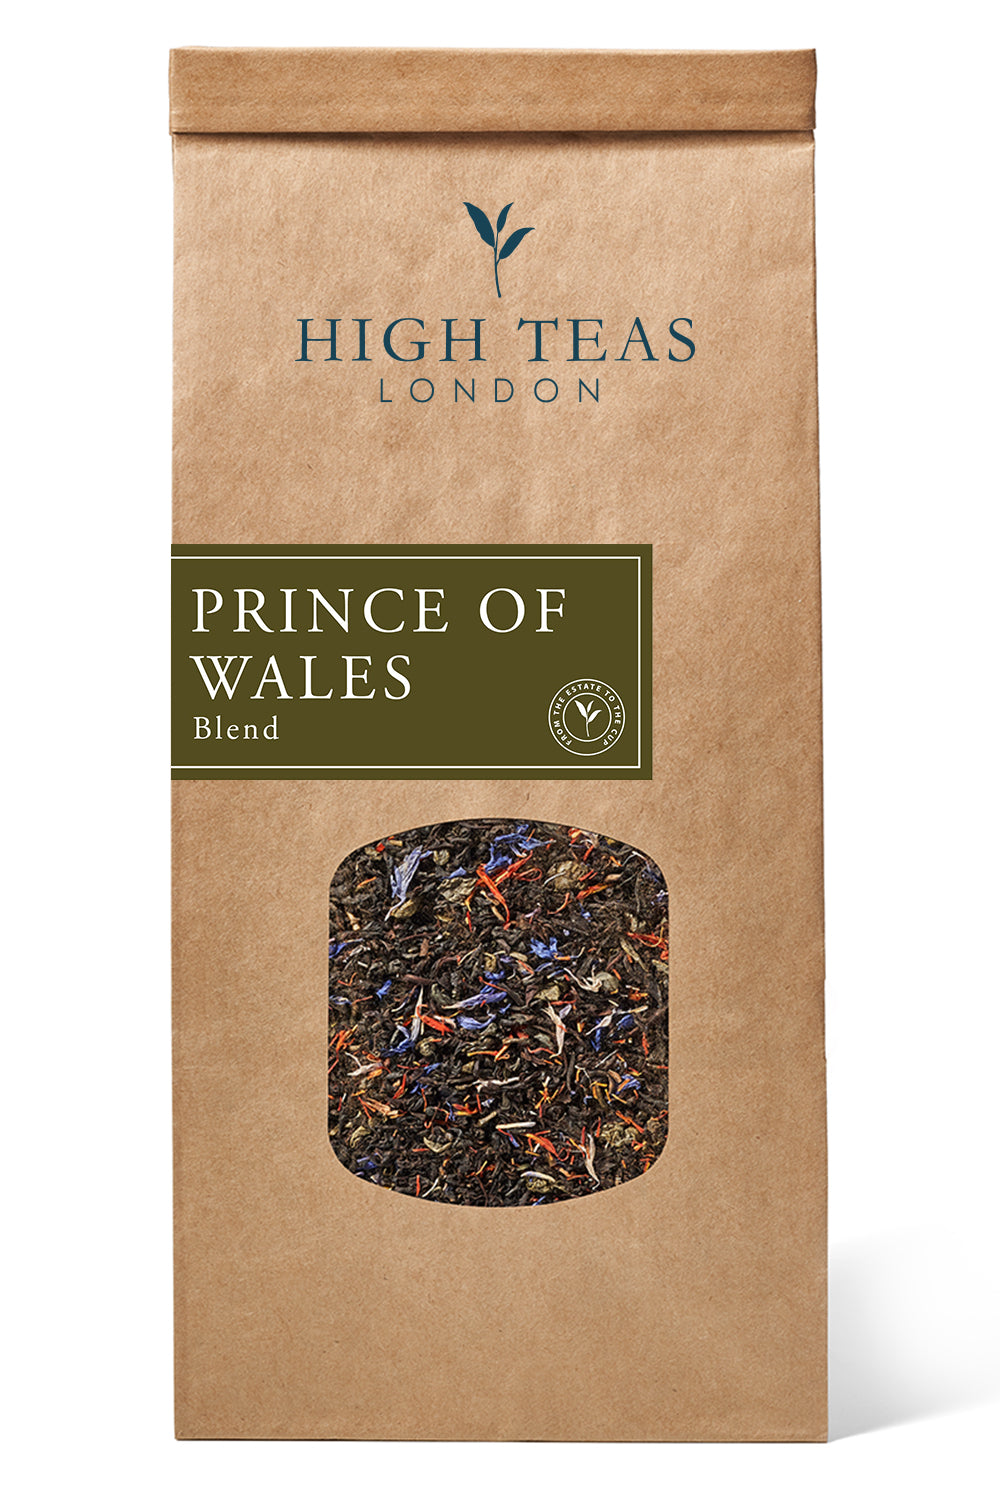 Prince of Wales-250g-Loose Leaf Tea-High Teas